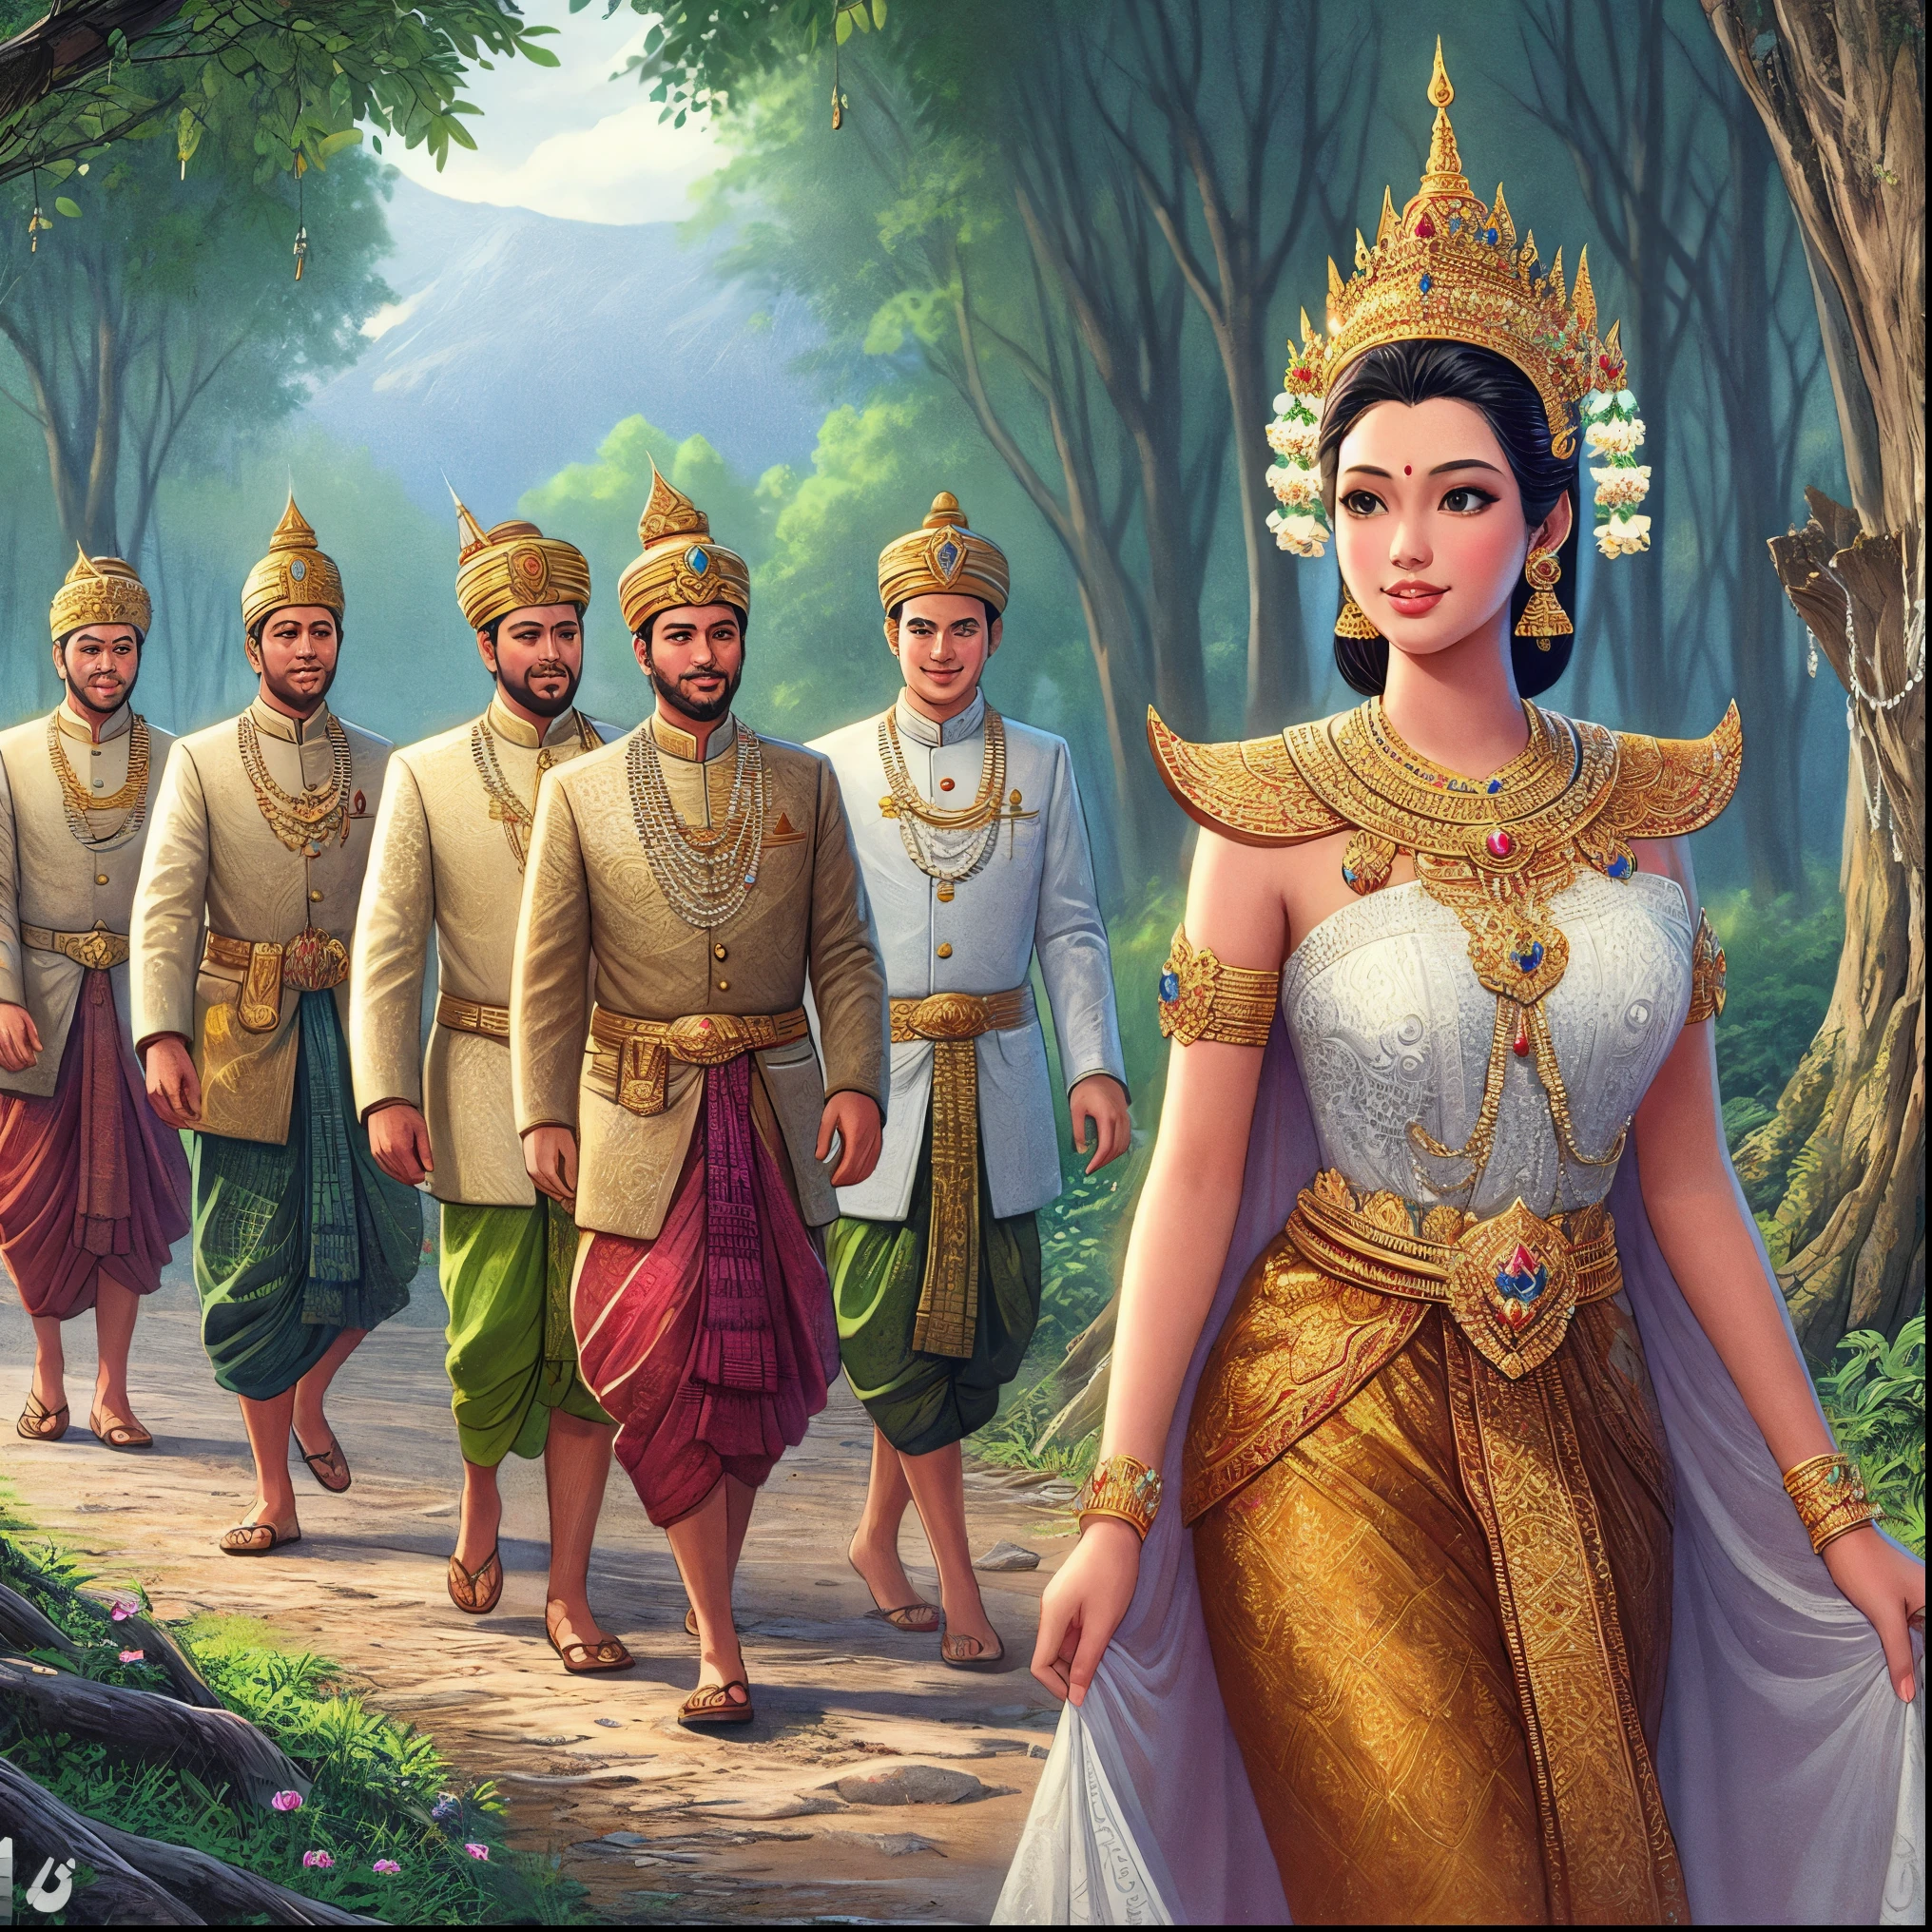 道を歩いている人々のグループのアラフェッド画像, 白いローブを着た古代の王, タイの芸術, 古代リブ王女, ニヴァン・チャンタラ, 美しいファンタジーの皇后, 伝統的, 伝統的 beauty, インドの富の女神, ラマヤ語から, アンコールトーン, 女神, 古代の部族, 美人コンテストのレンダリング, 王室の女性, 女神女王